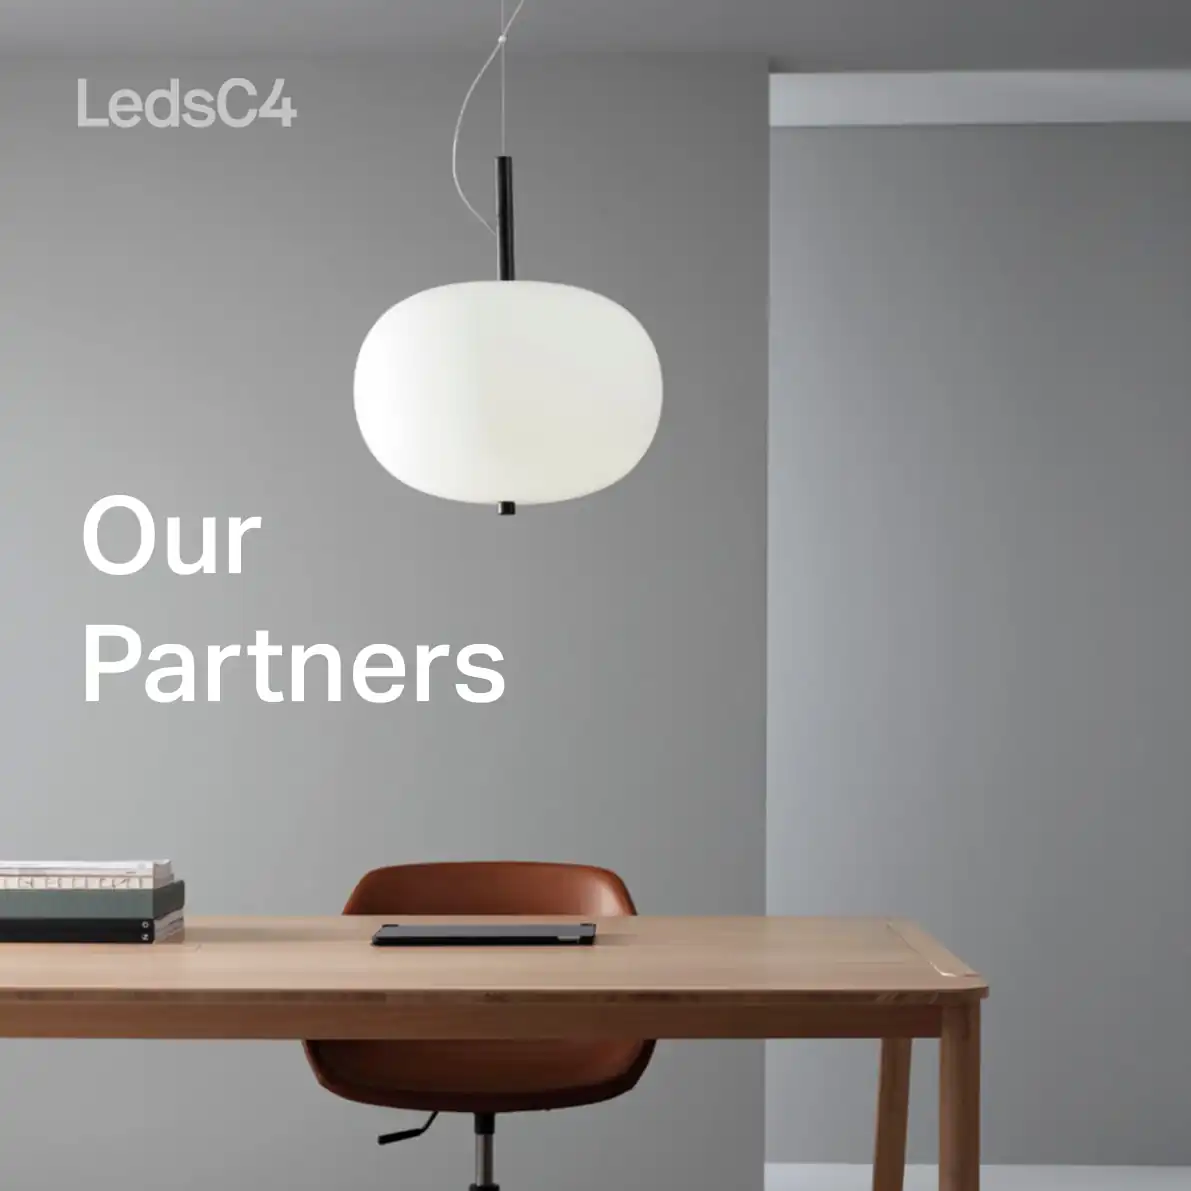 LedsC4 Products